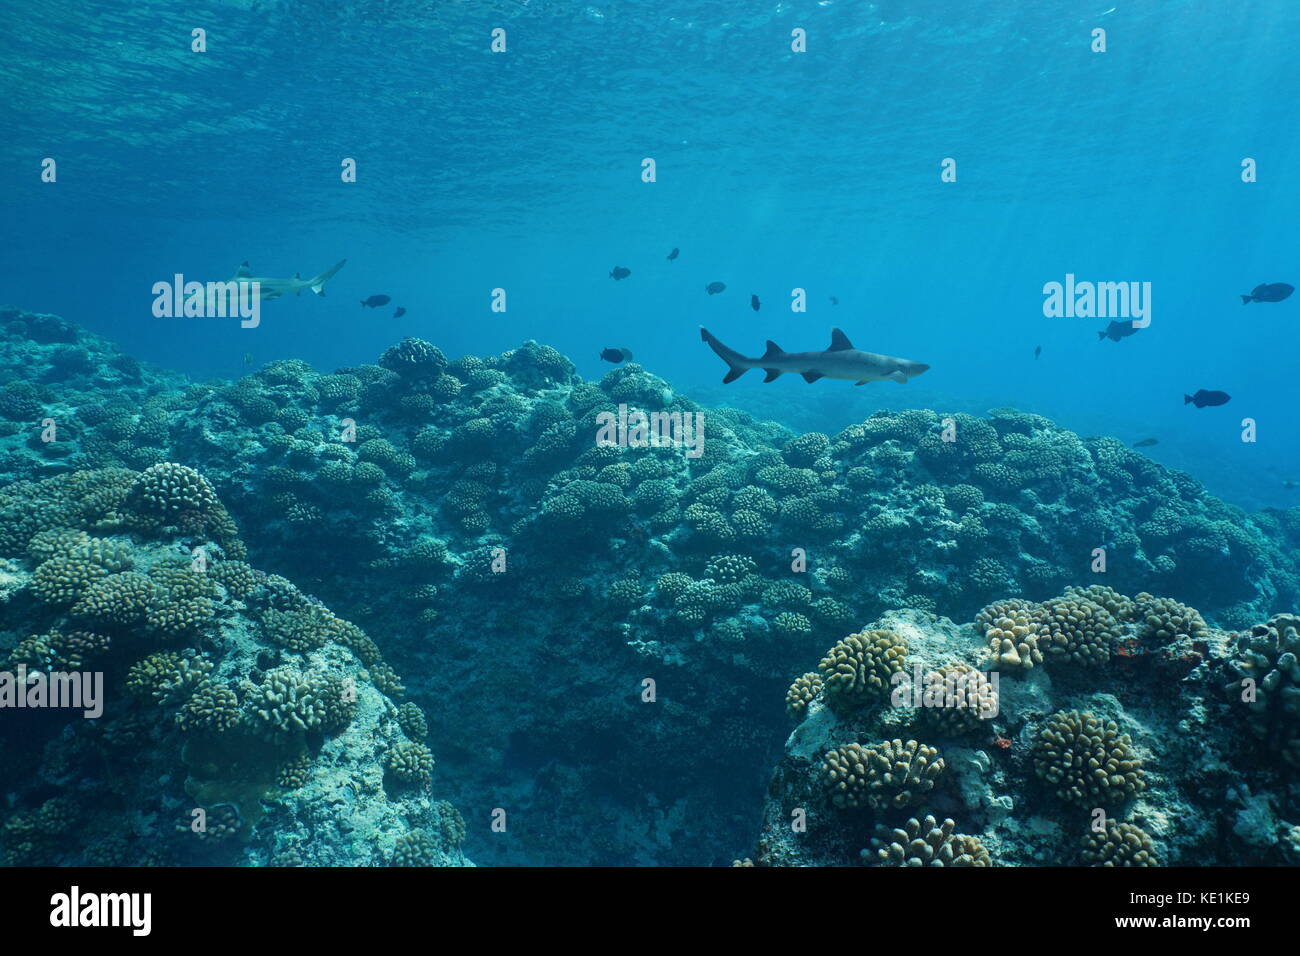 Paysage marin sous-marin sea life sur l'île de Huahine des récifs coralliens, l'océan Pacifique sud, Polynésie française, Océanie Banque D'Images